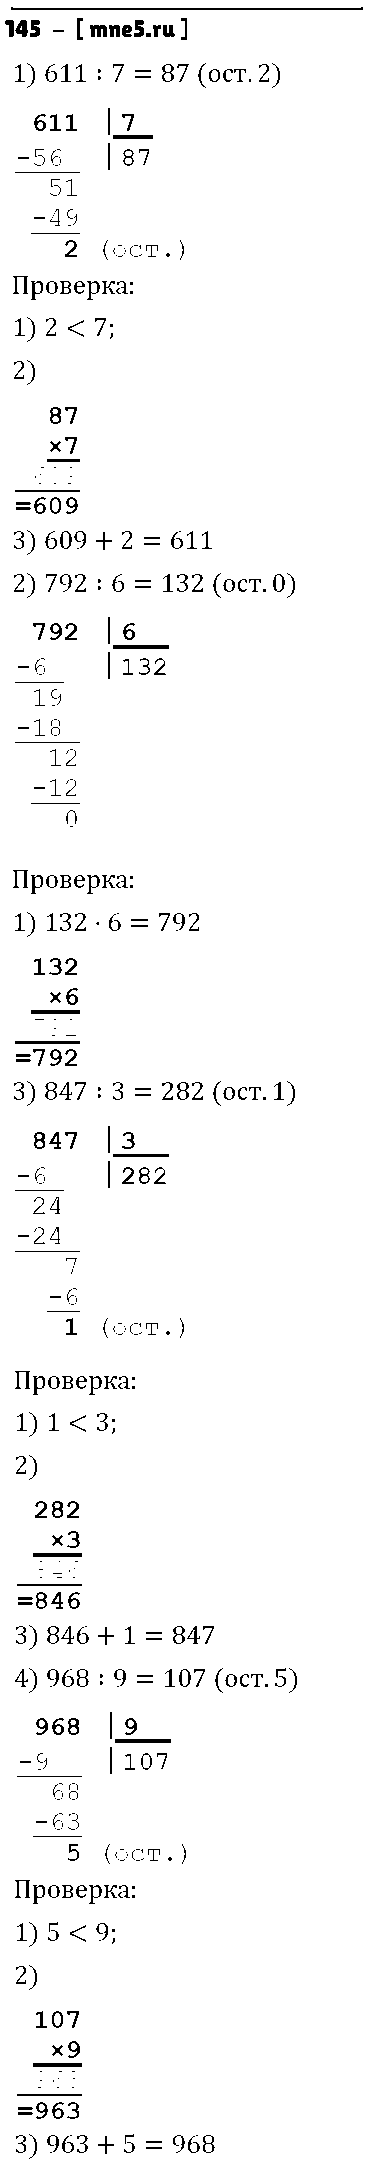 ГДЗ Математика 4 класс - 145